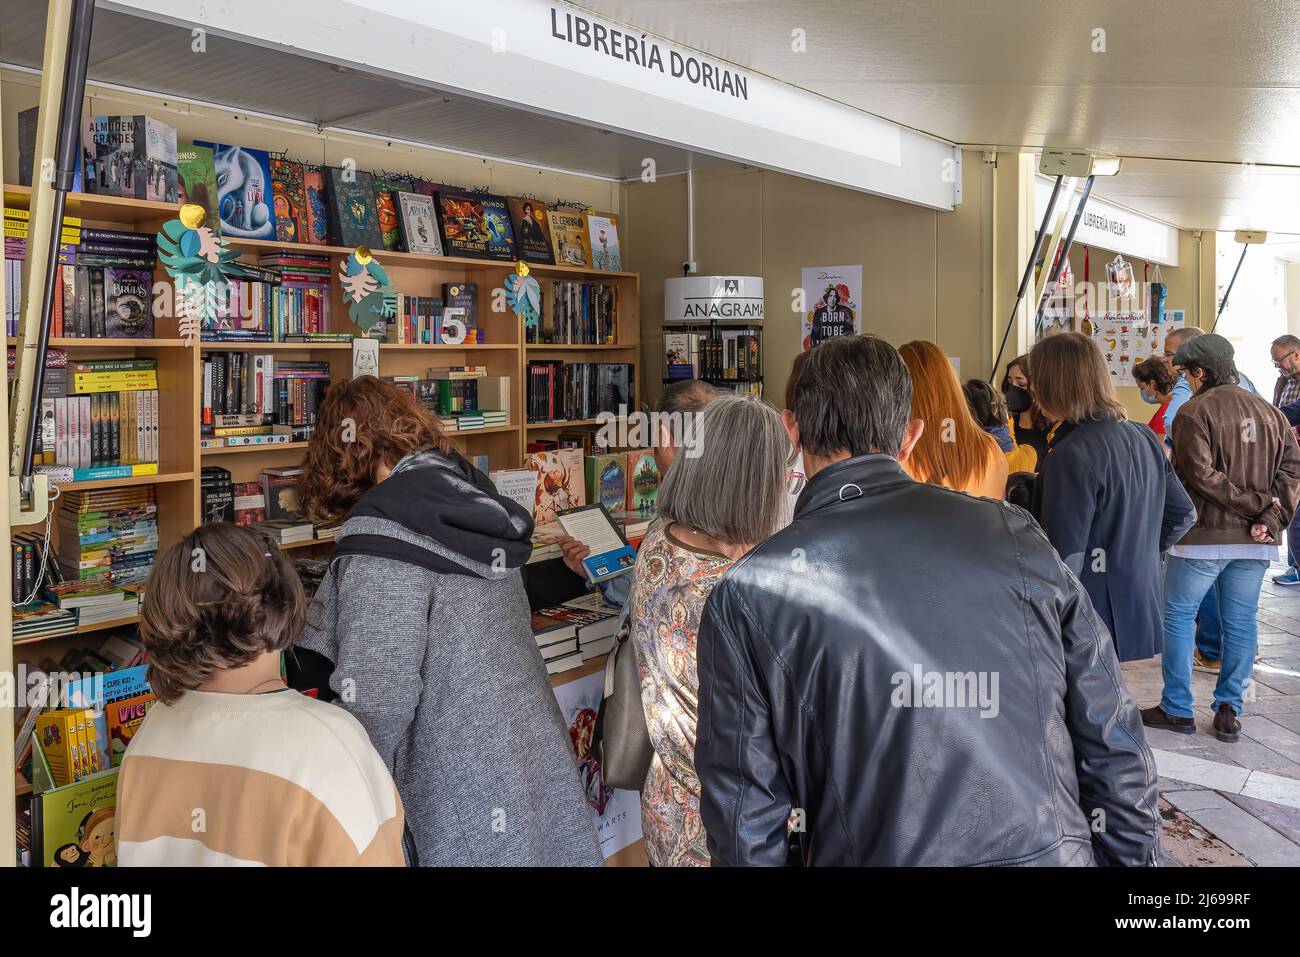 Huelva, Spanien - 24. April 2022: Menschenmenge, die die Ausgabe der Buchmesse 46. besucht, die sich im Zentrum der Plaza de las Monjas (Platz des N Stockfoto